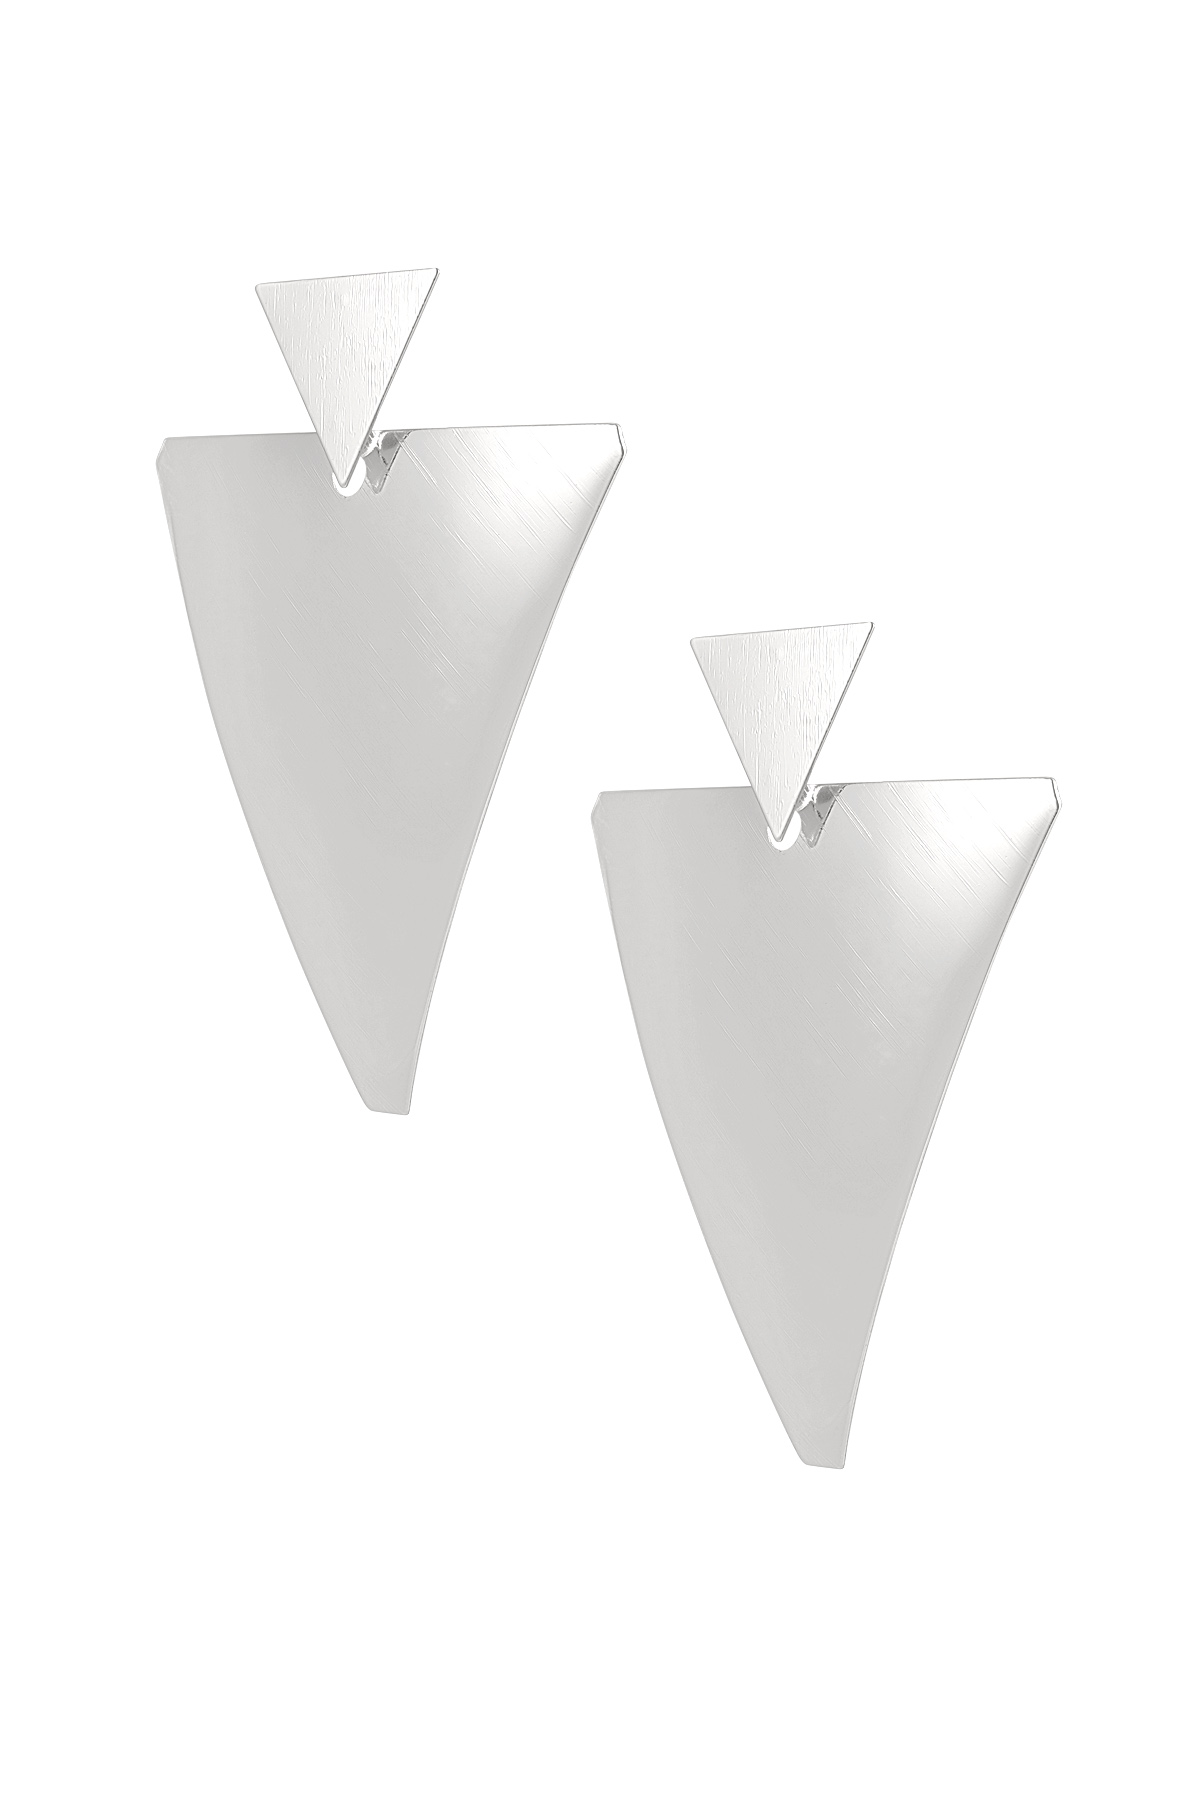 Oorstekers dubbele driehoek - zilver h5 